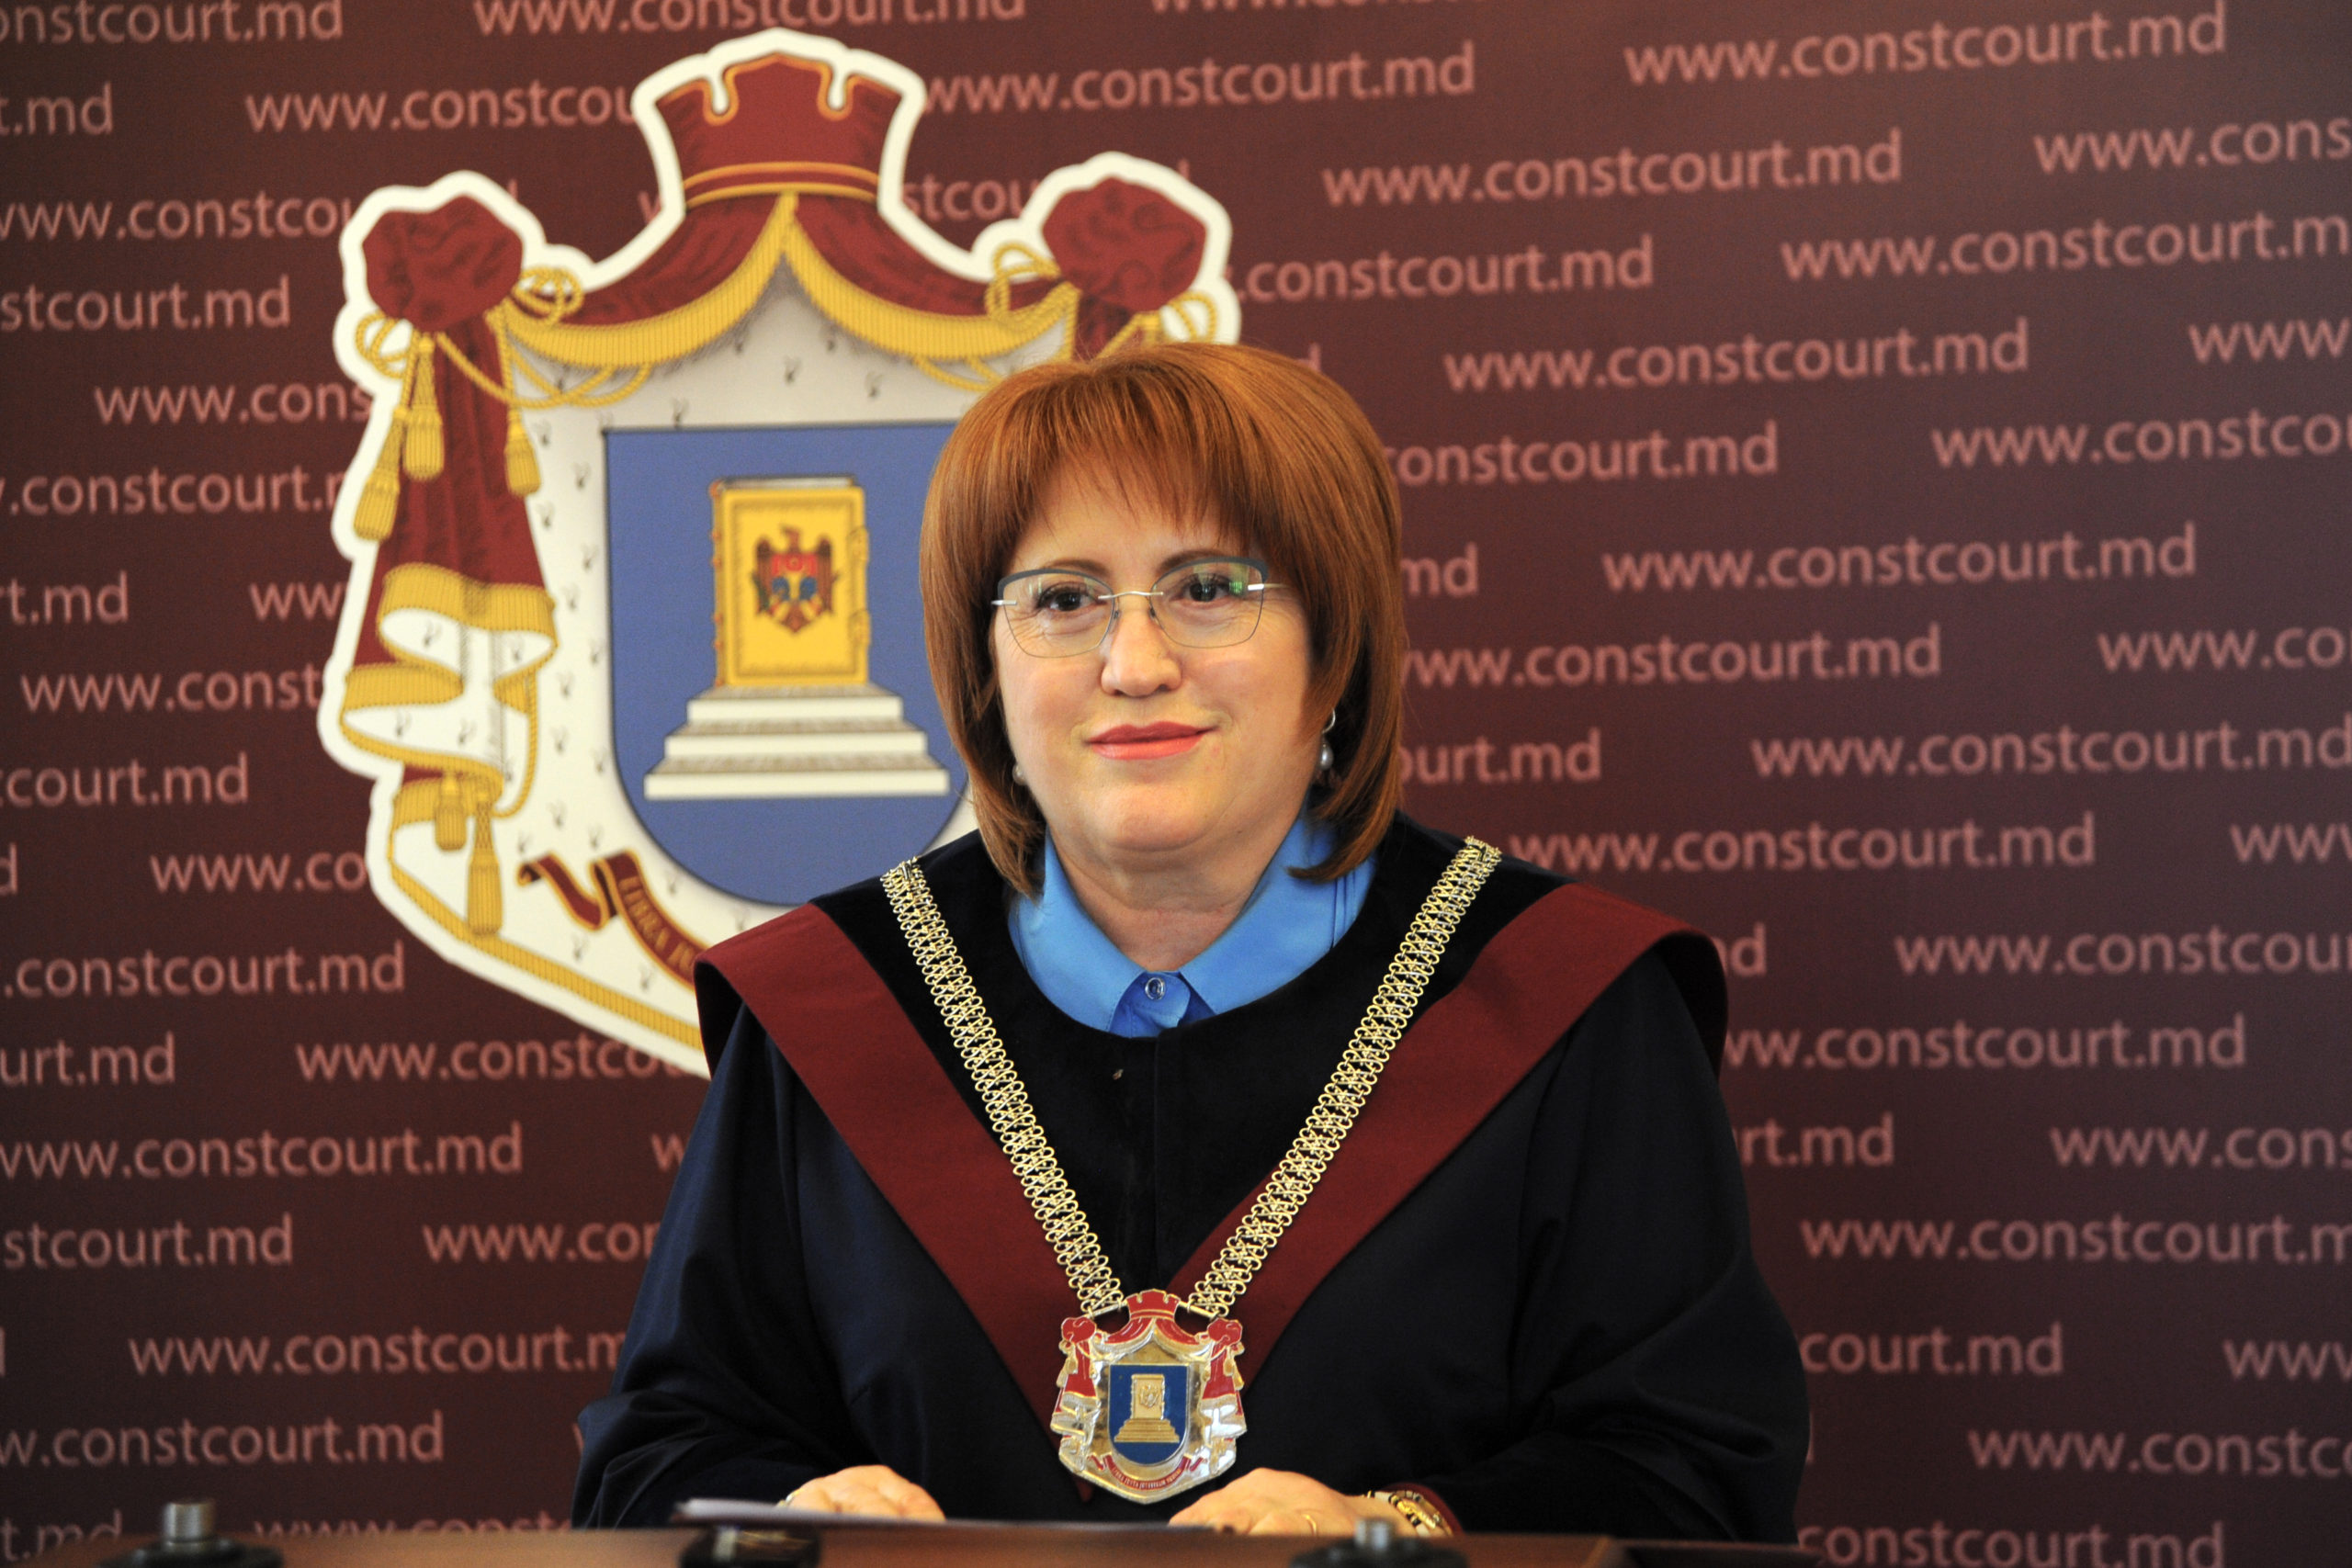 Președintele Curții Constituționale, Domnica Manole: Hotărârile adoptate potrivit rezultatelor referendumului republican constituțional au putere juridică supremă fără o eventuală confirmare a Parlamentului